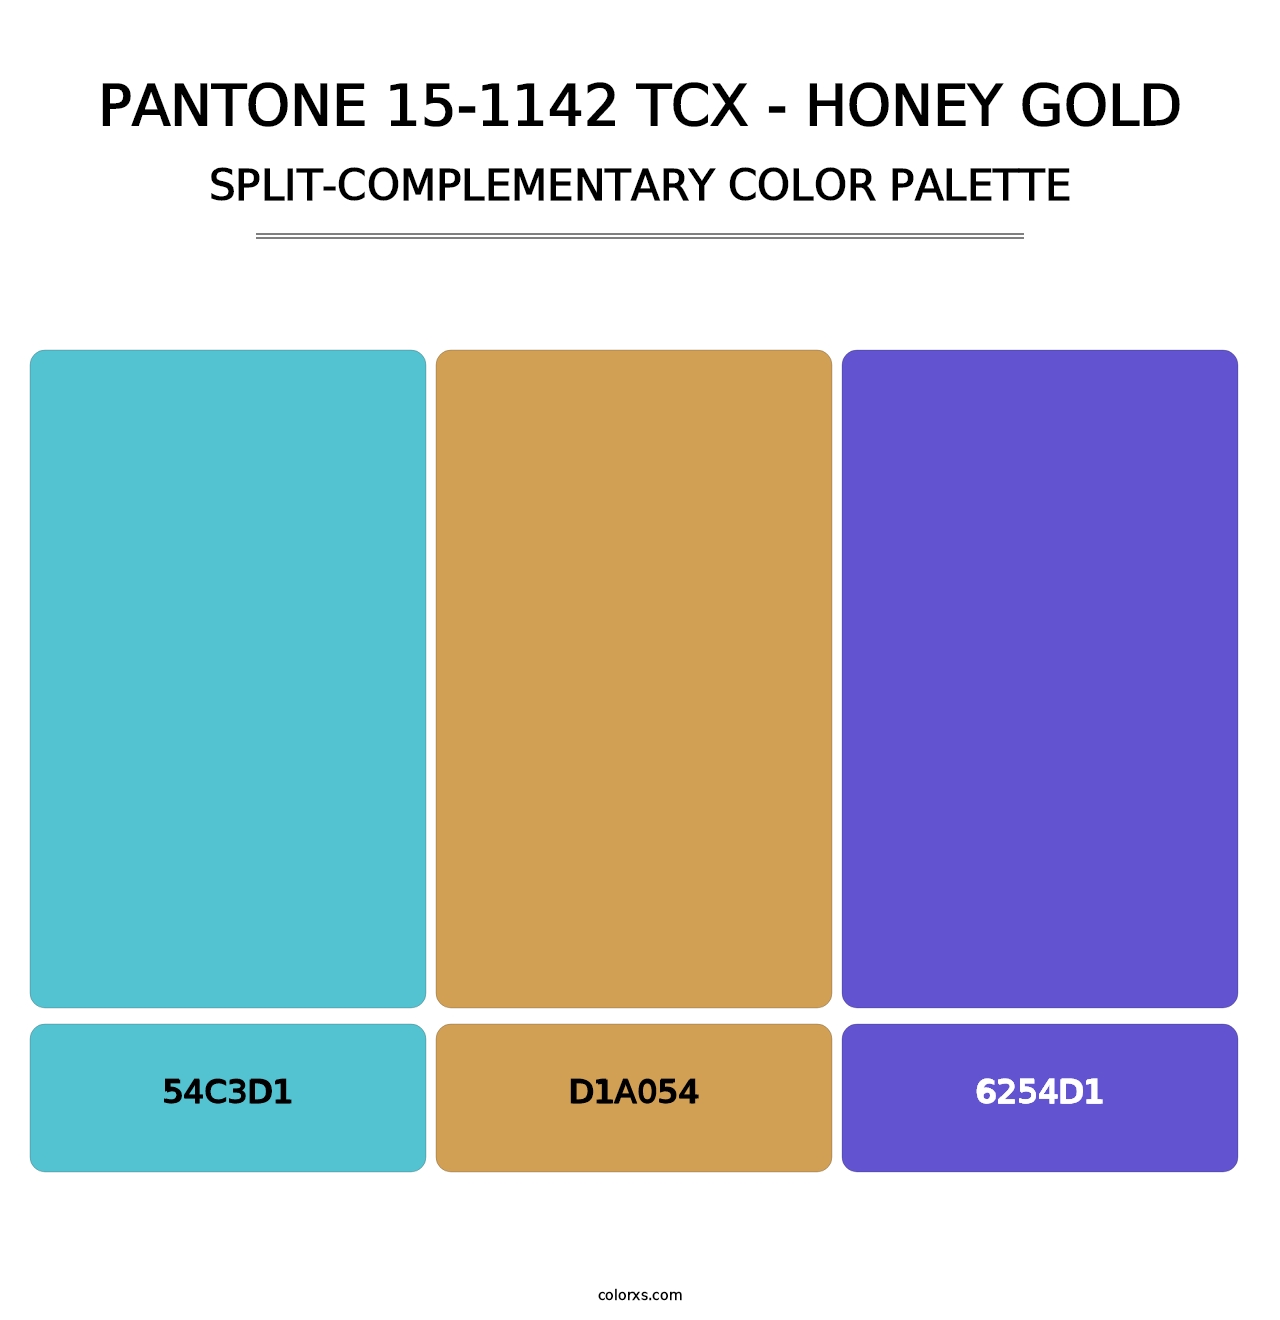 PANTONE 15-1142 TCX - Honey Gold - Split-Complementary Color Palette